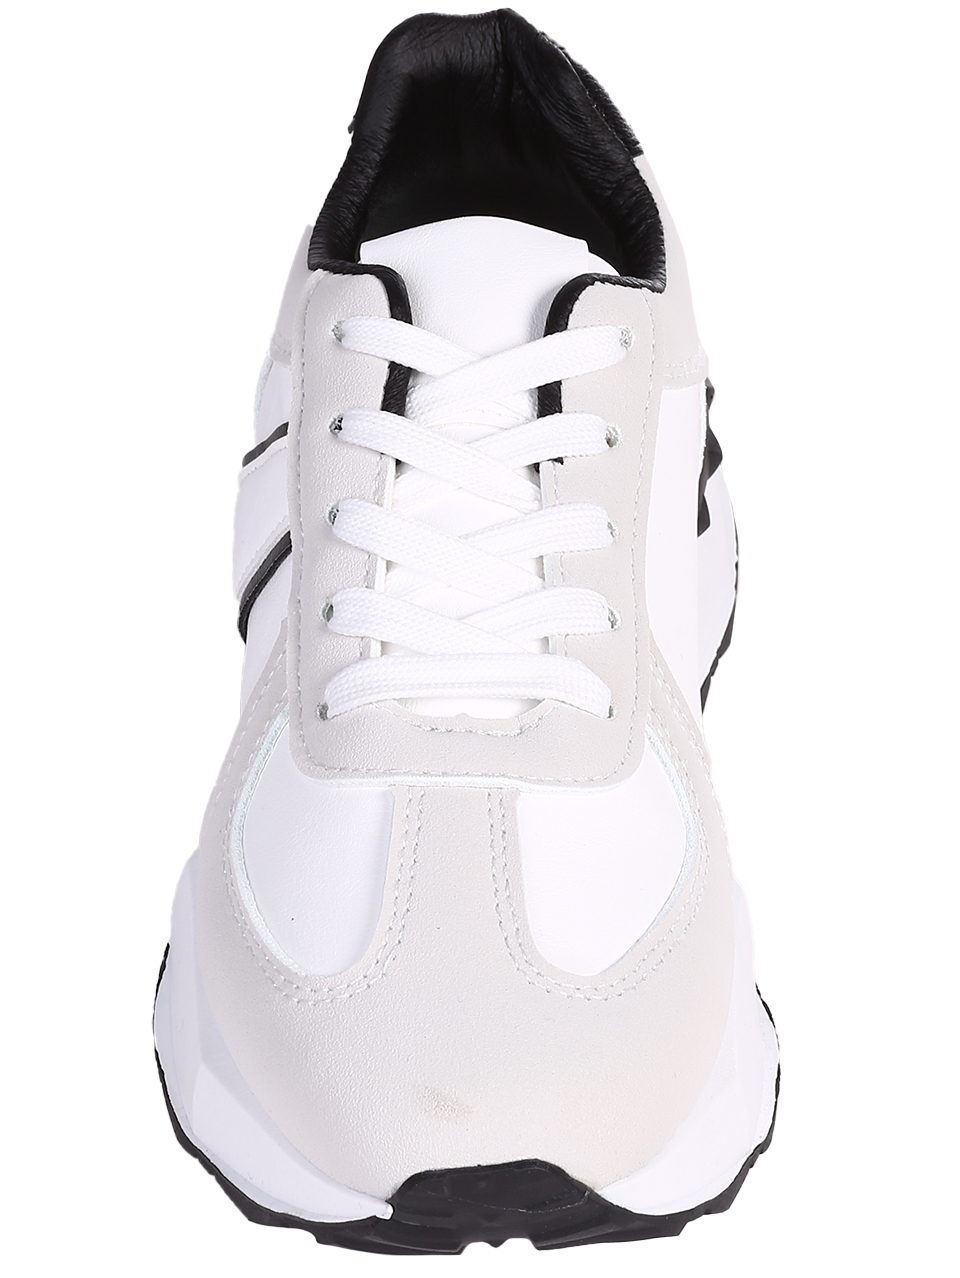 Ежедневни дамски обувки в бял/черен цвят 3U-24001 off white/black